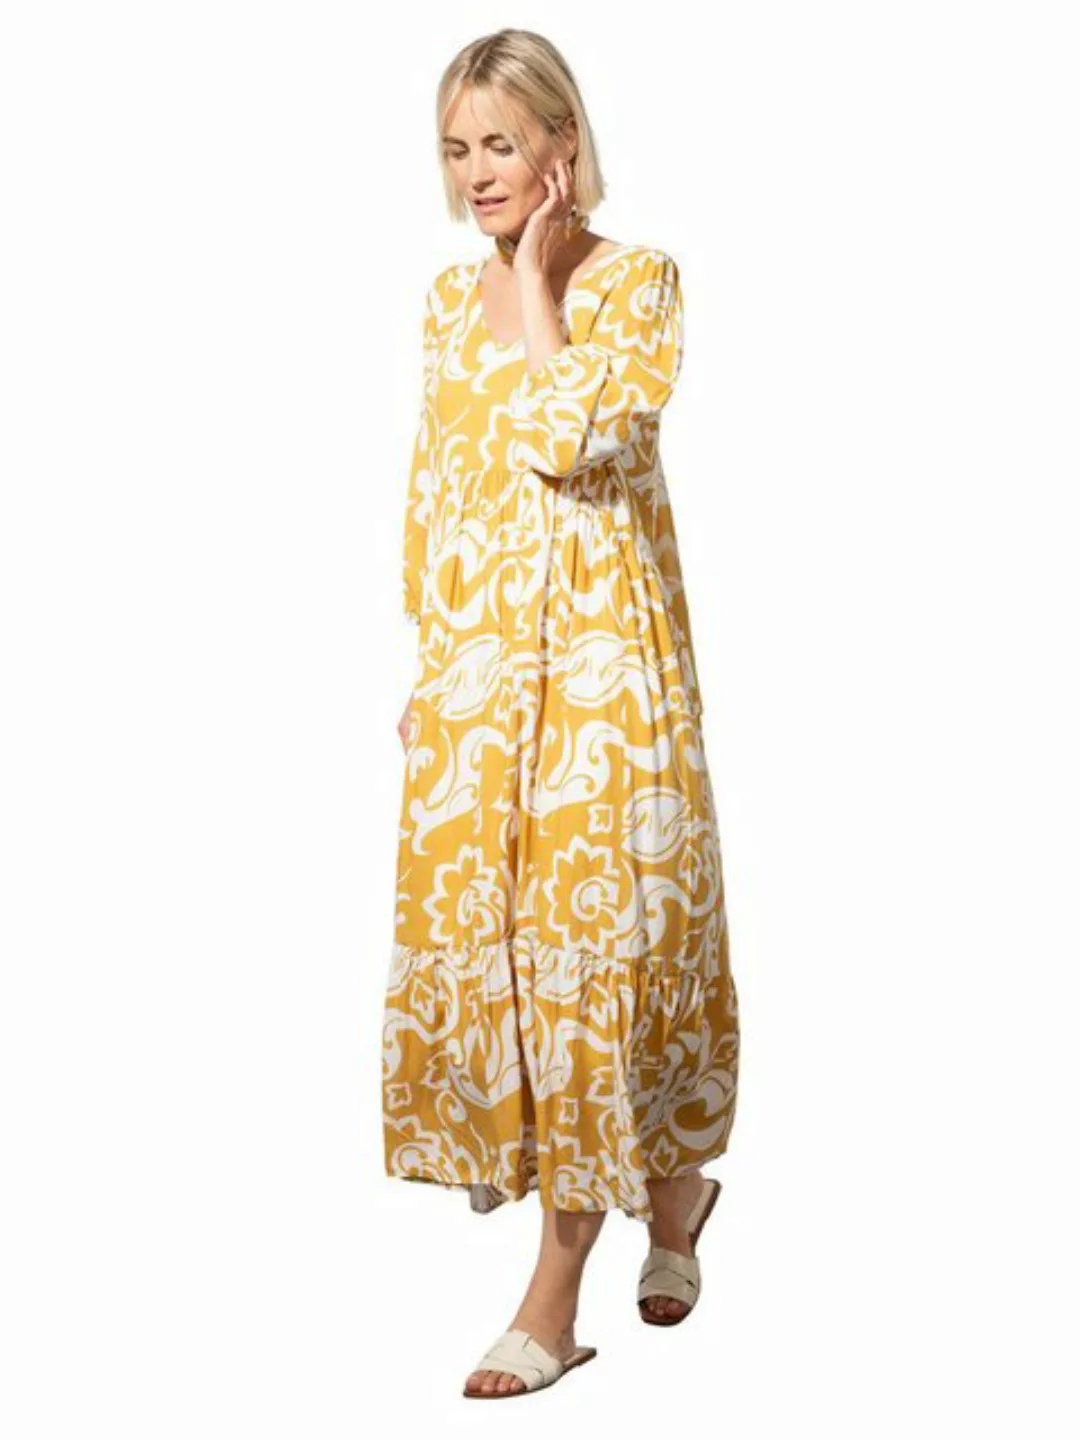 Tunikakleid, gelb/weiß, Sommer-Kollektion günstig online kaufen